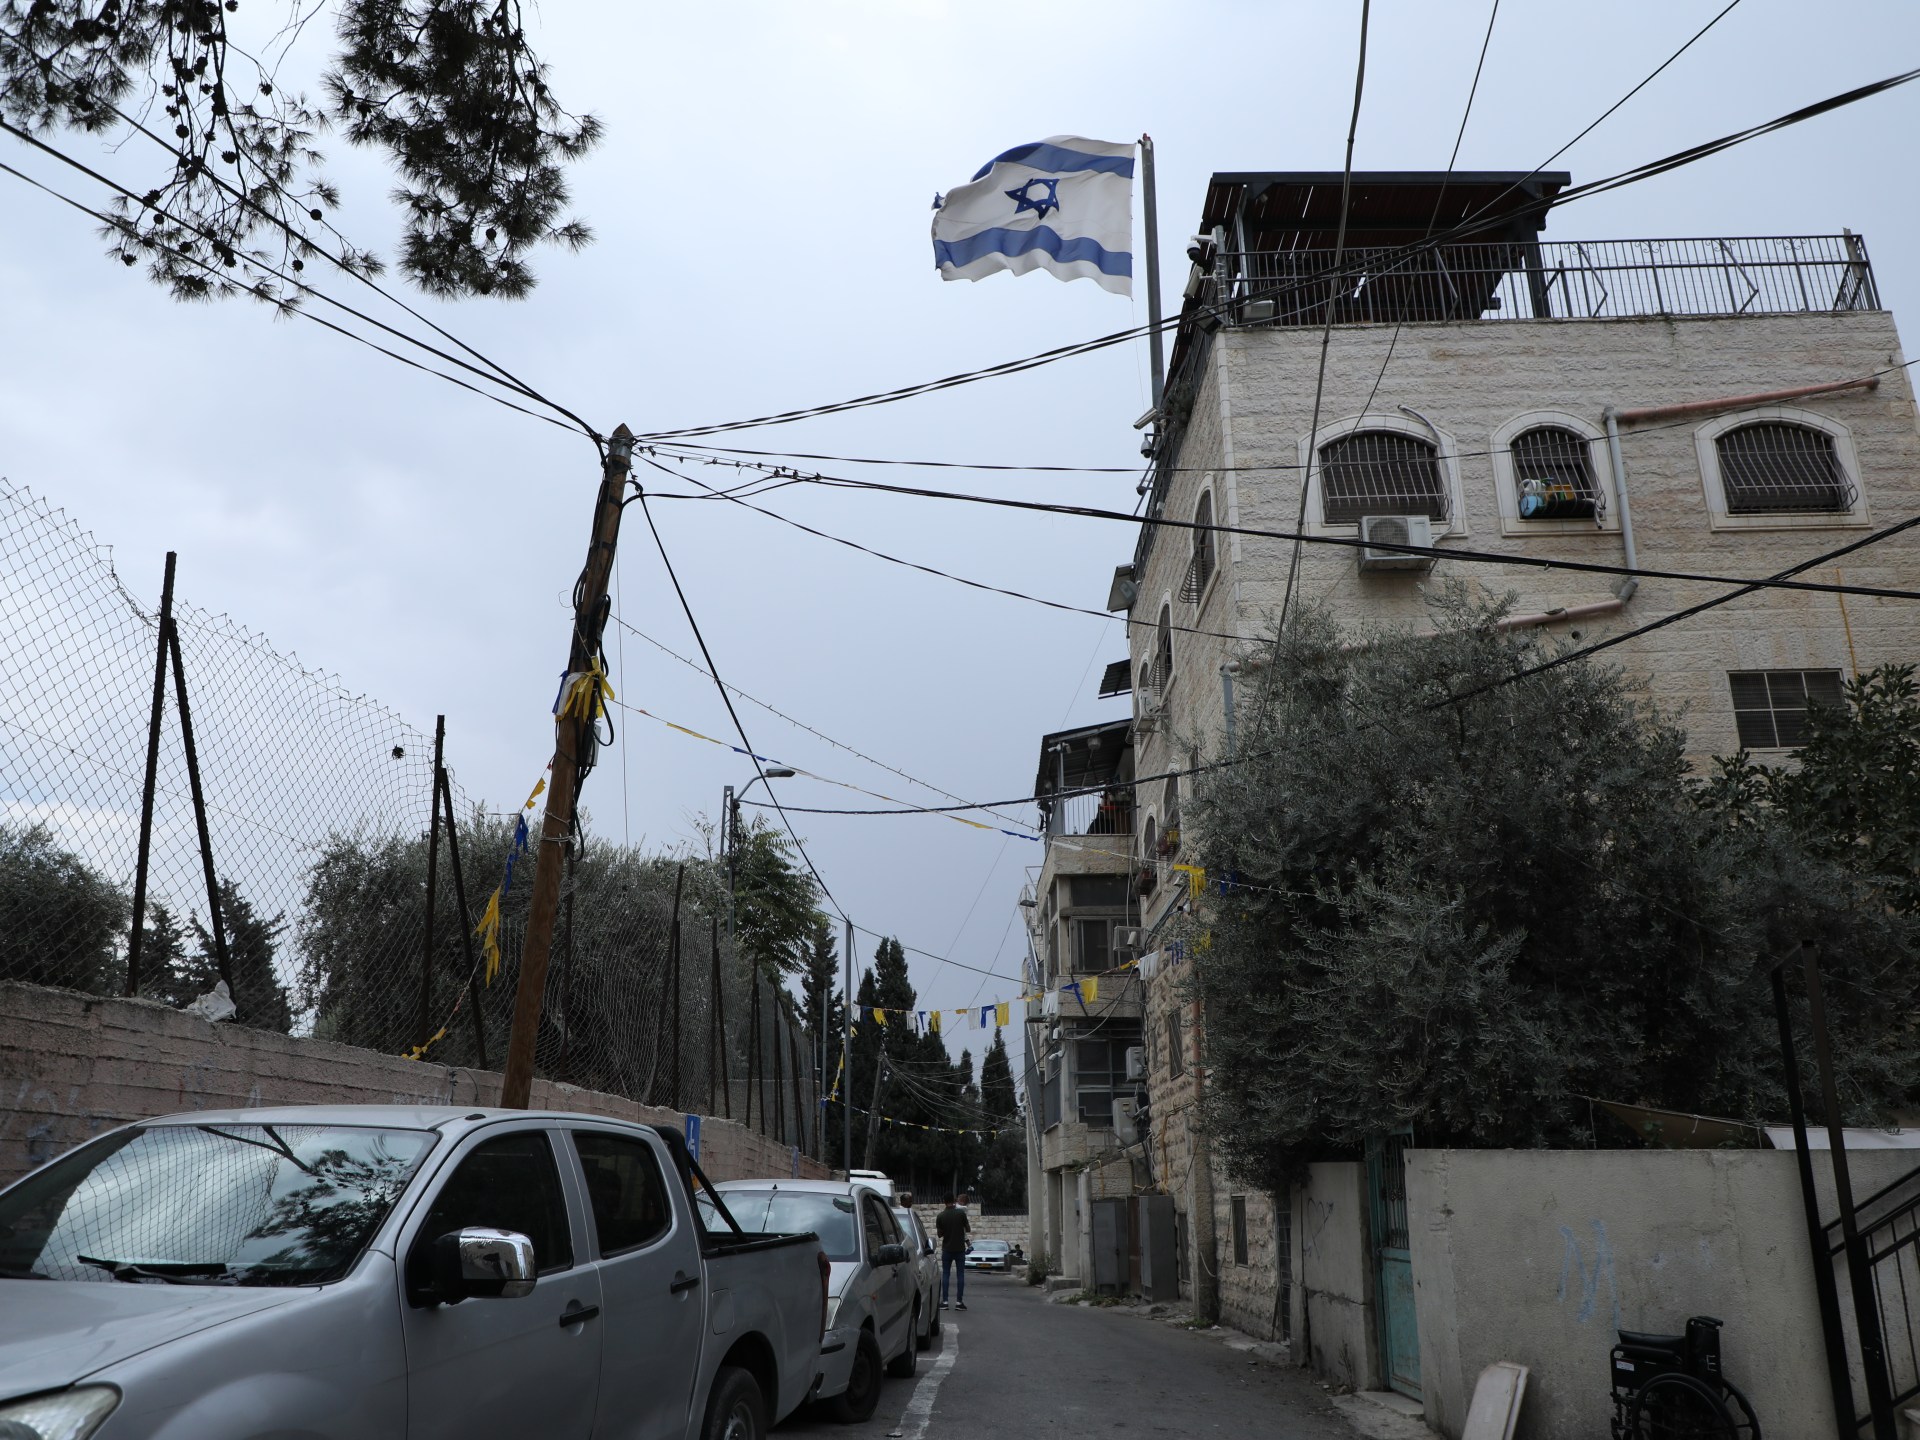 كيف ينتقم الاحتلال من قرية الطور بالقدس بعد طوفان الأقصى؟ | القدس – البوكس نيوز